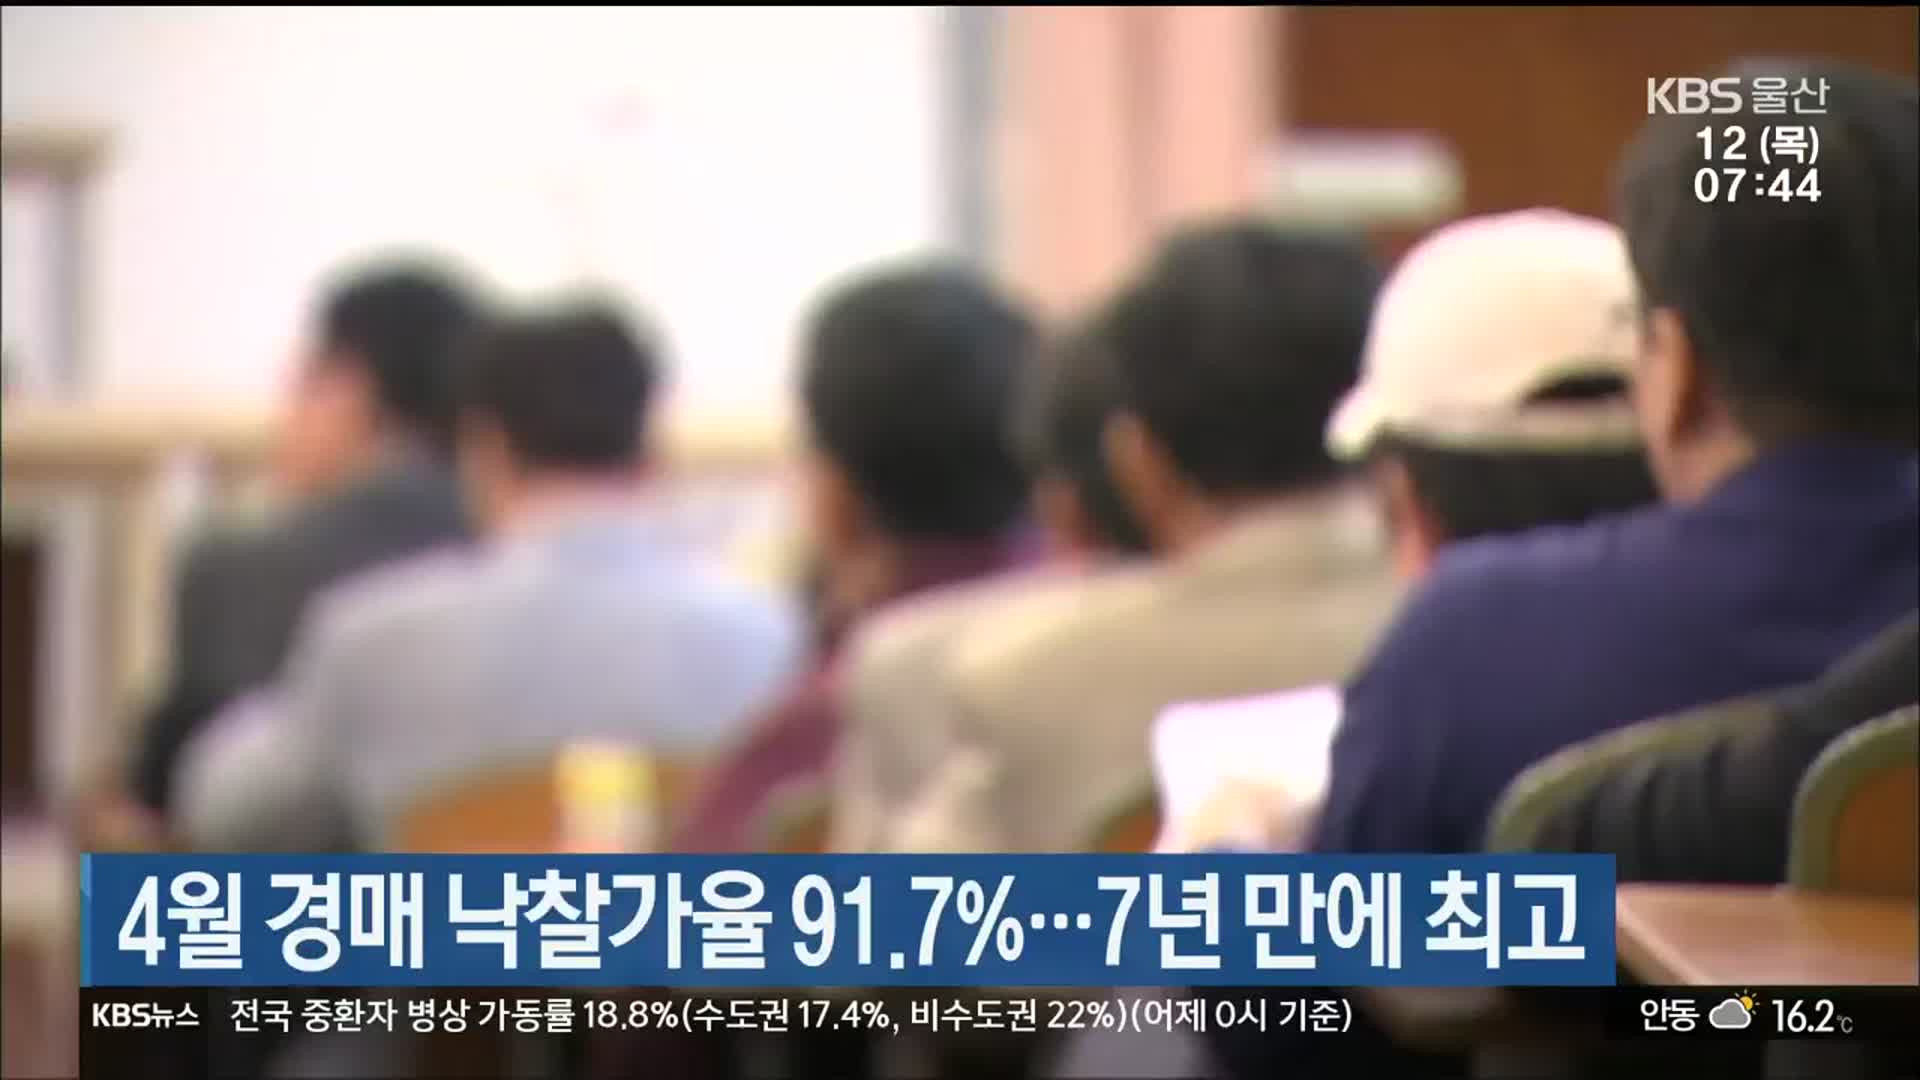 울산 4월 경매 낙찰가율 91.7%…7년 만에 최고